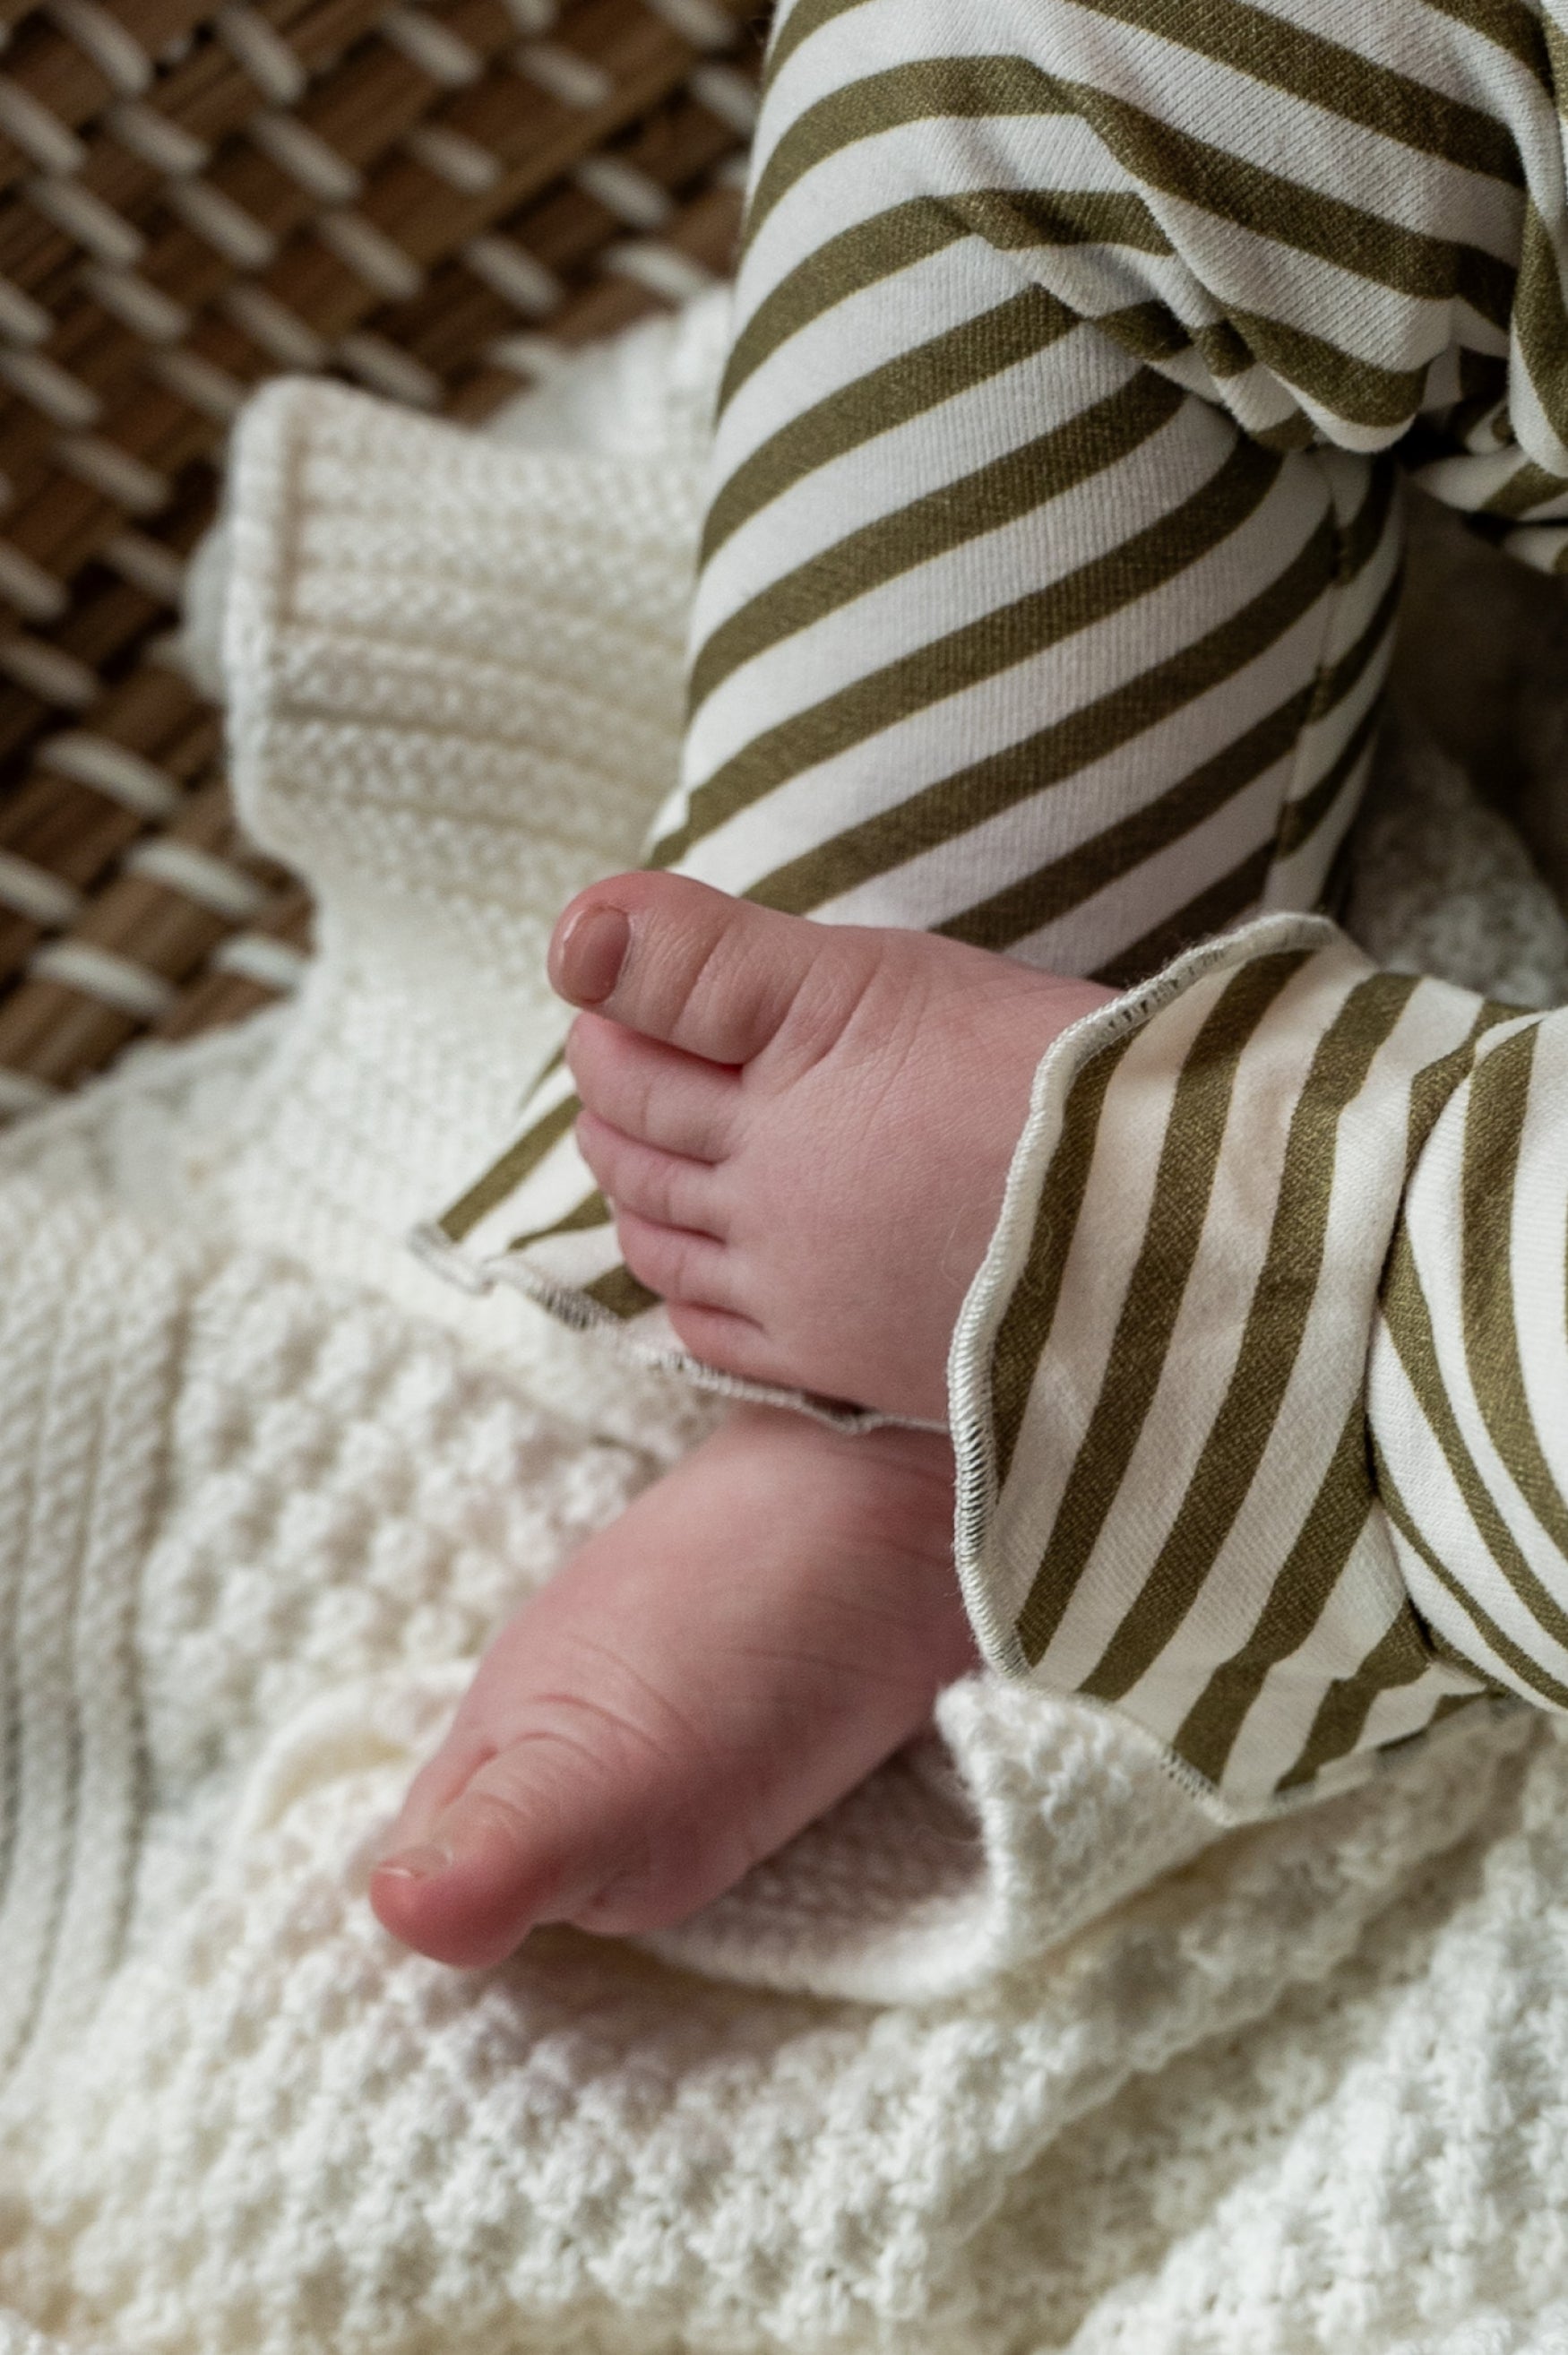 Meisjes Trouser Ruffle van Klein Baby in de kleur Stripe Off White/Twill in maat 74.